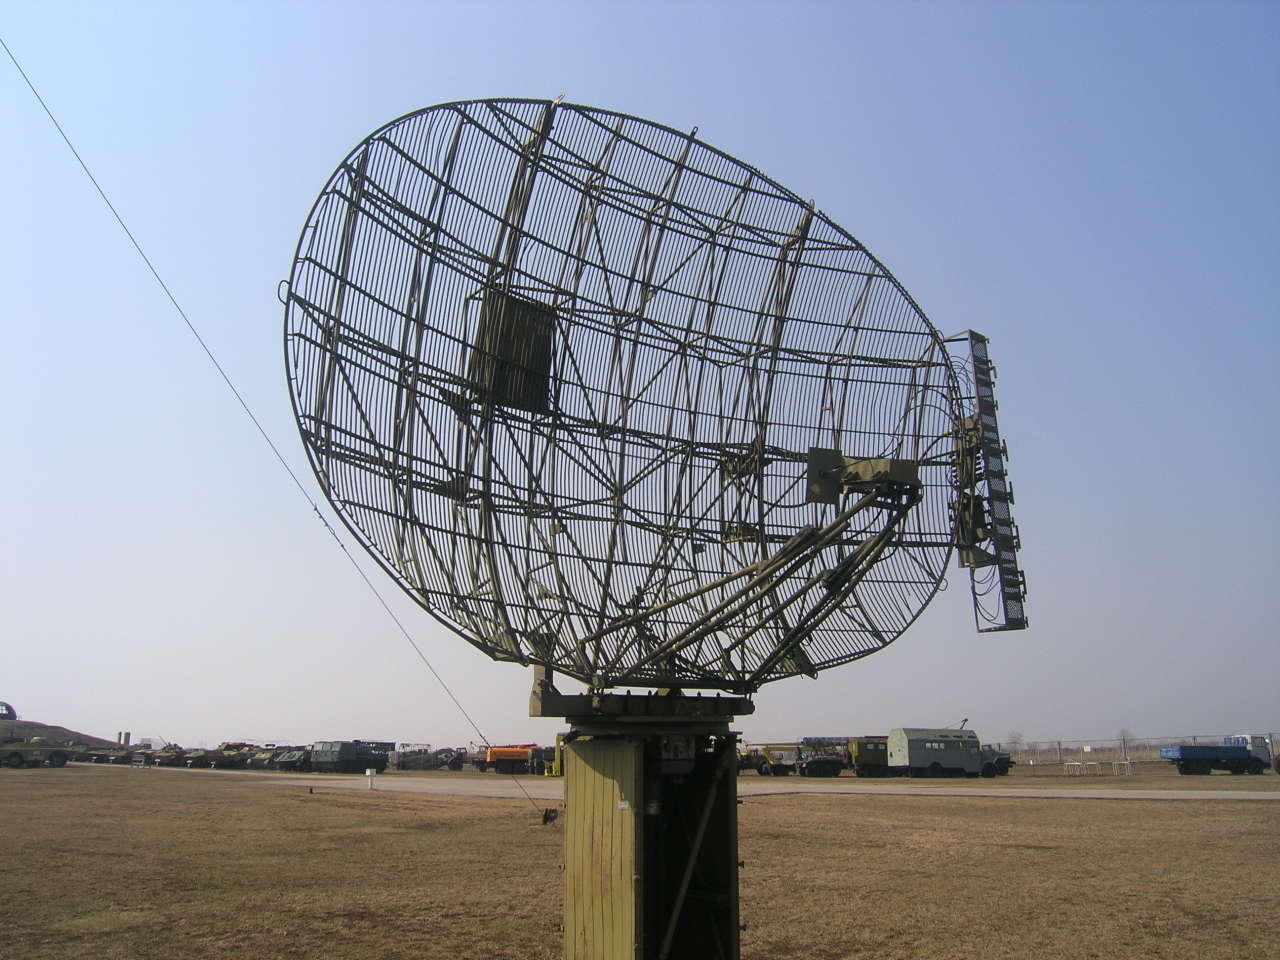 Iran reveals new domestically built radar system